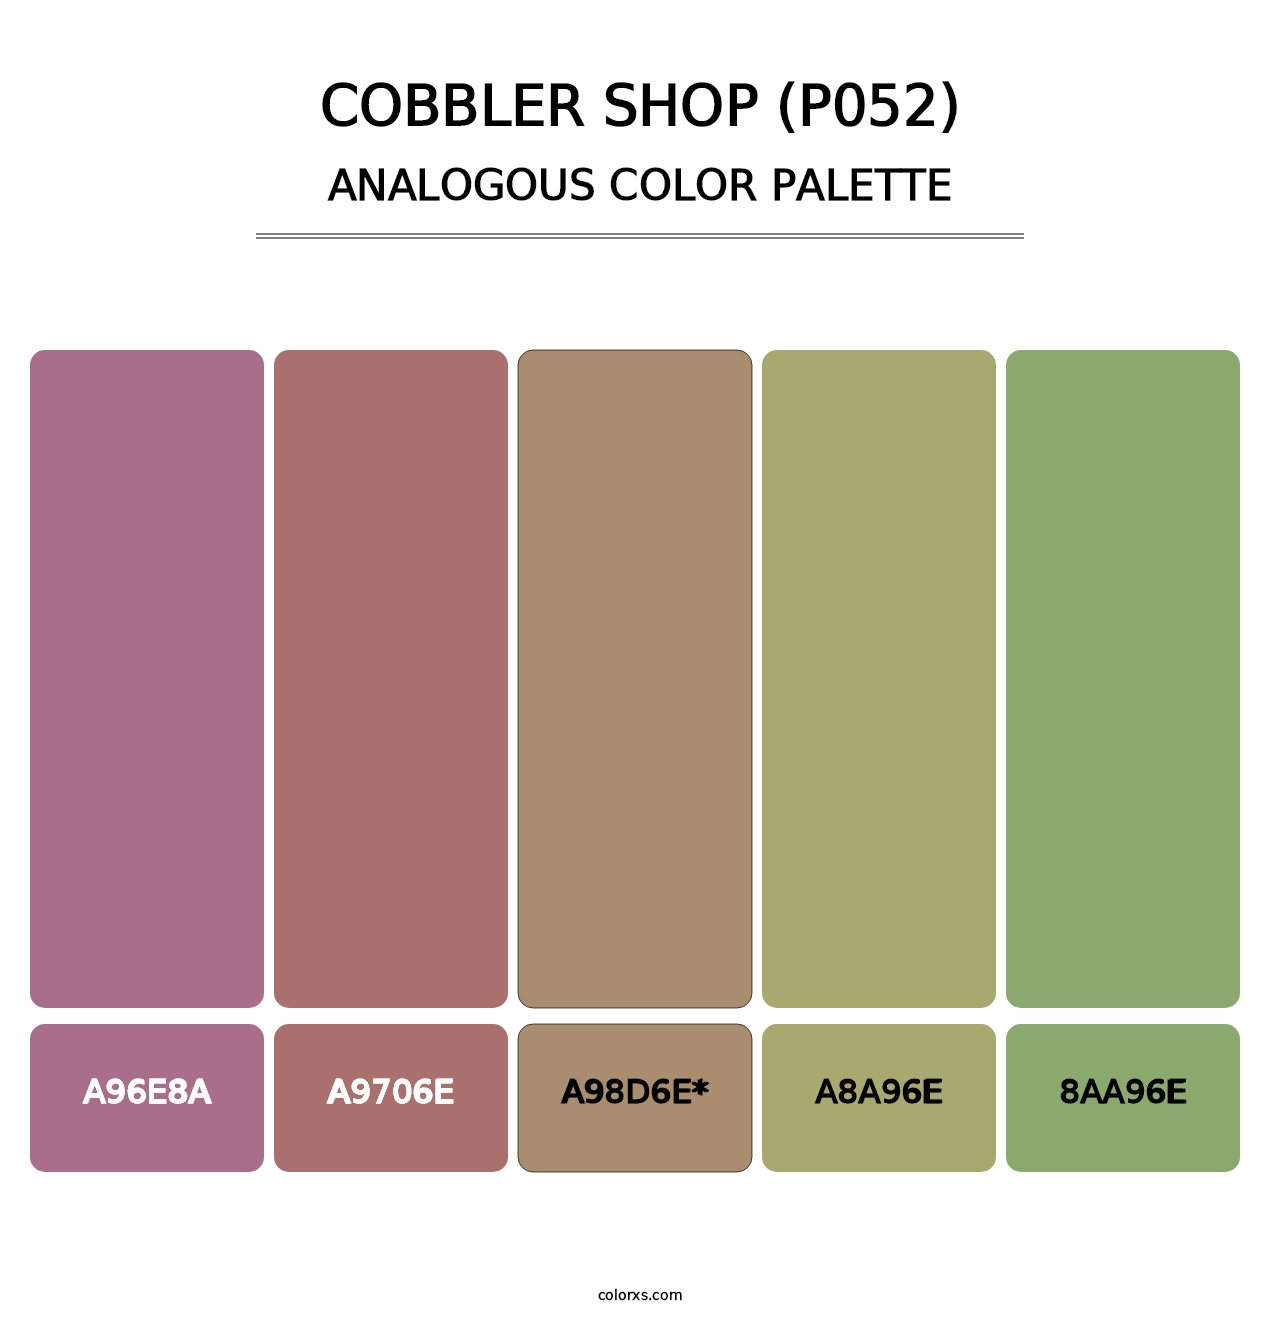 Cobbler Shop (P052) - Analogous Color Palette